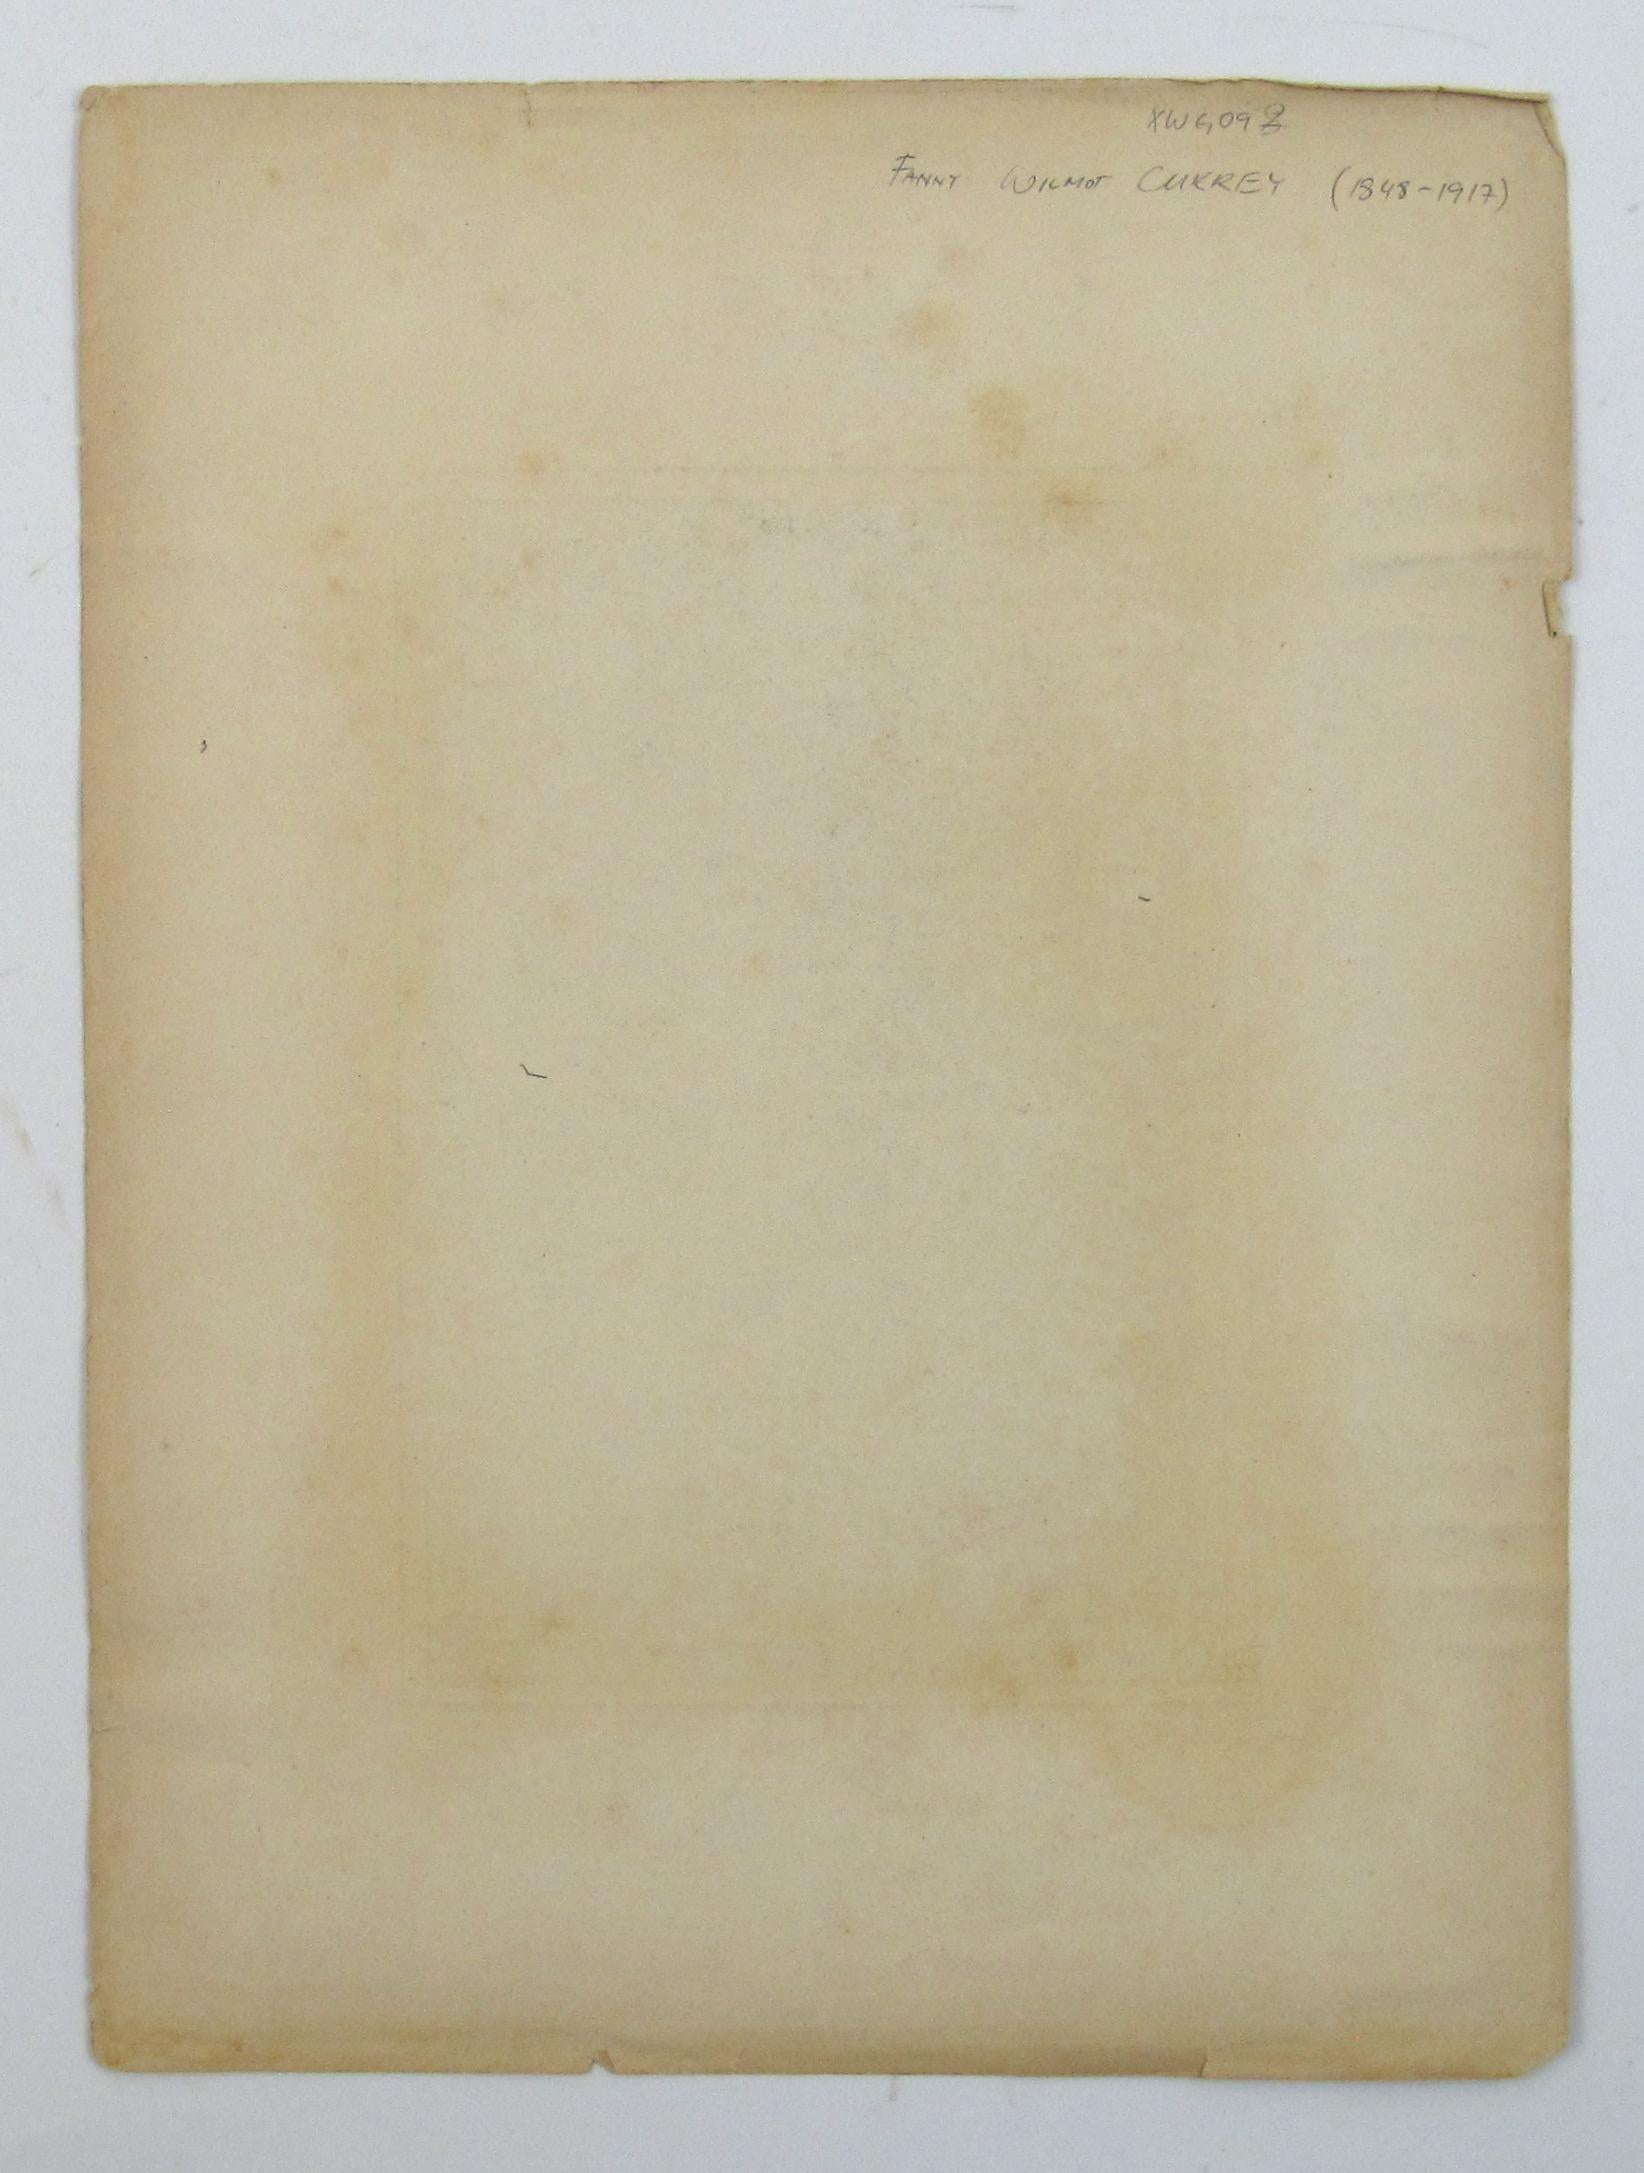 Fanny Wimot Currey
(Irlandais, 1848 - 1917)

Via Crucis Via Lucis

•	Crayon sur papier ca. 31 x 25 cm
•	Signé et daté en bas à droite 1883
•	La feuille mesure environ 31,2 x 23,2 cm.
•	L'image, y compris le cadre dessiné, mesure environ 19,4 x 13,3